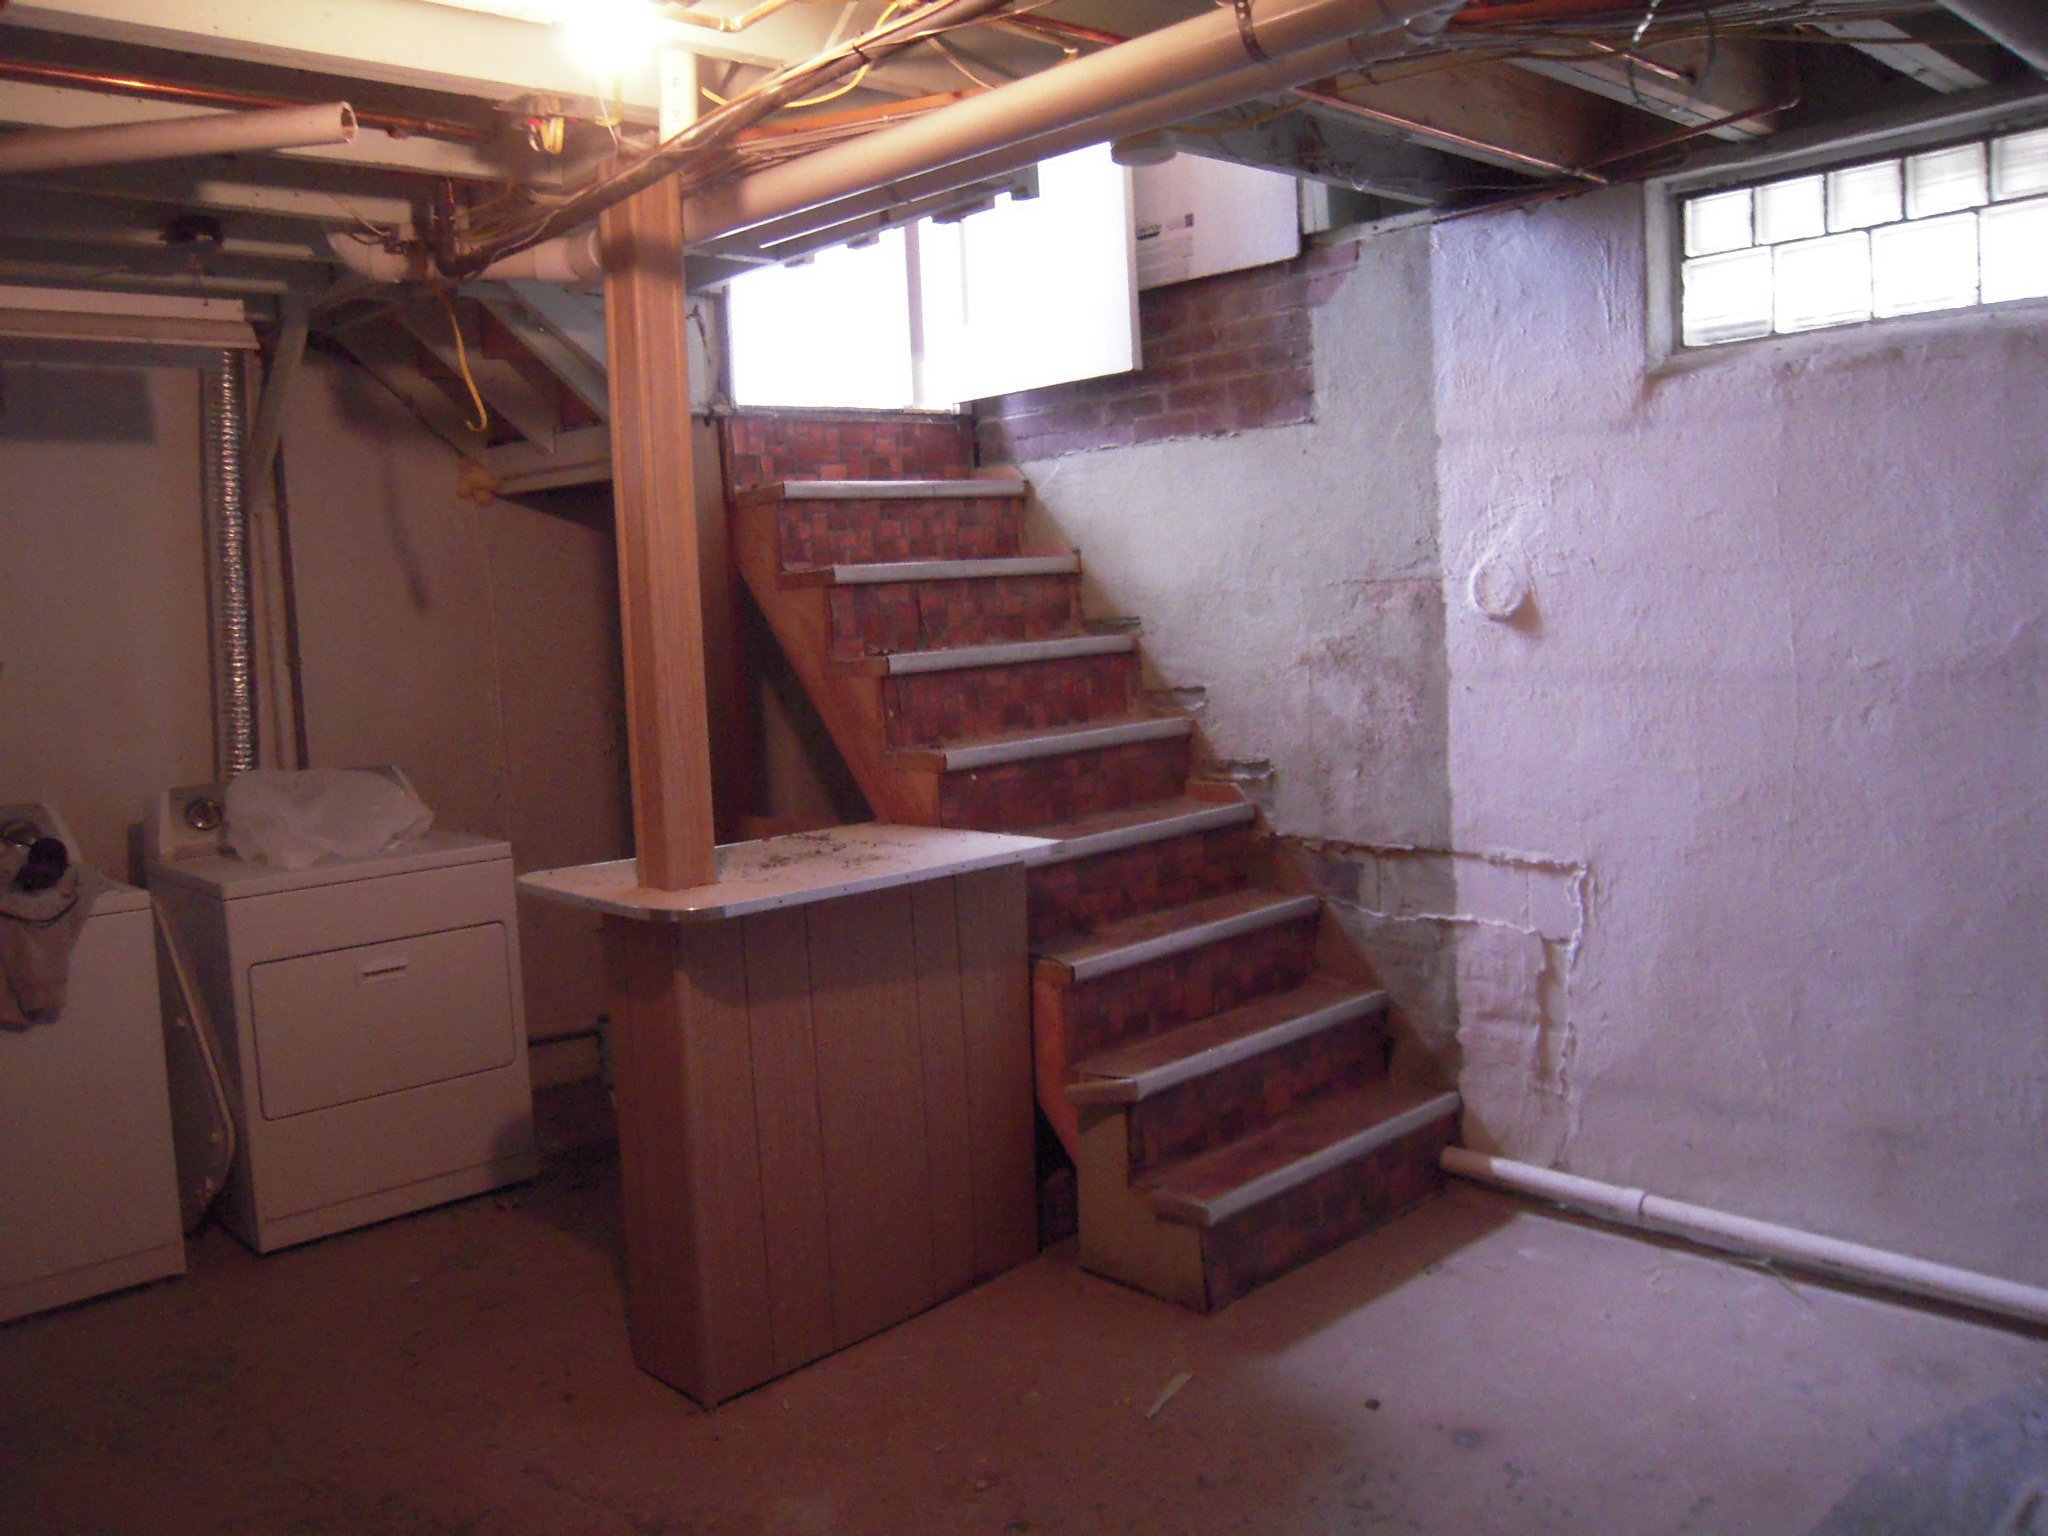 1 basement stair